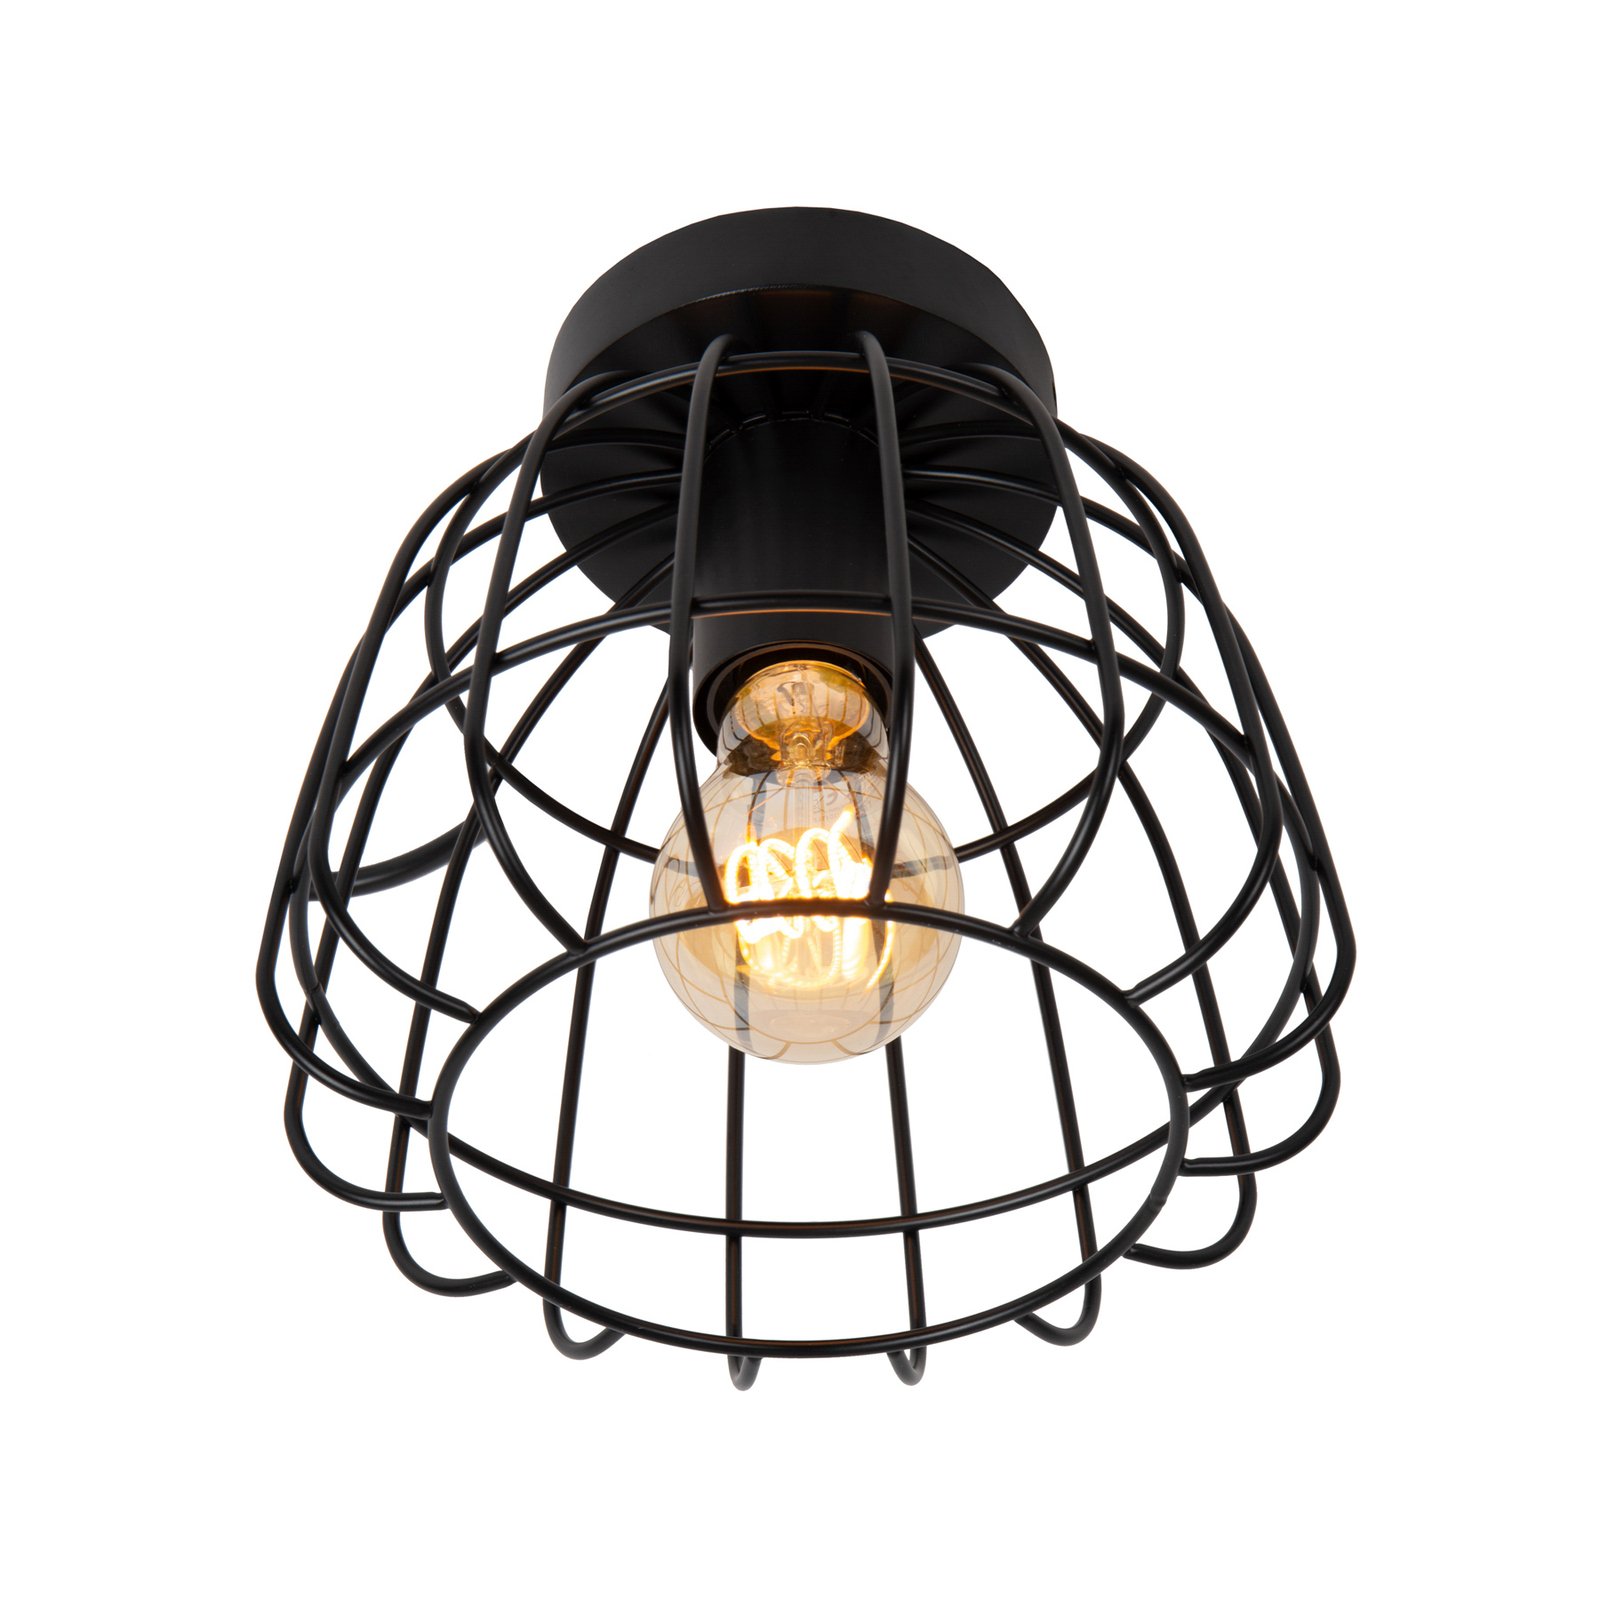 Lampa sufitowa Filox z klatkowym kloszem, czarna